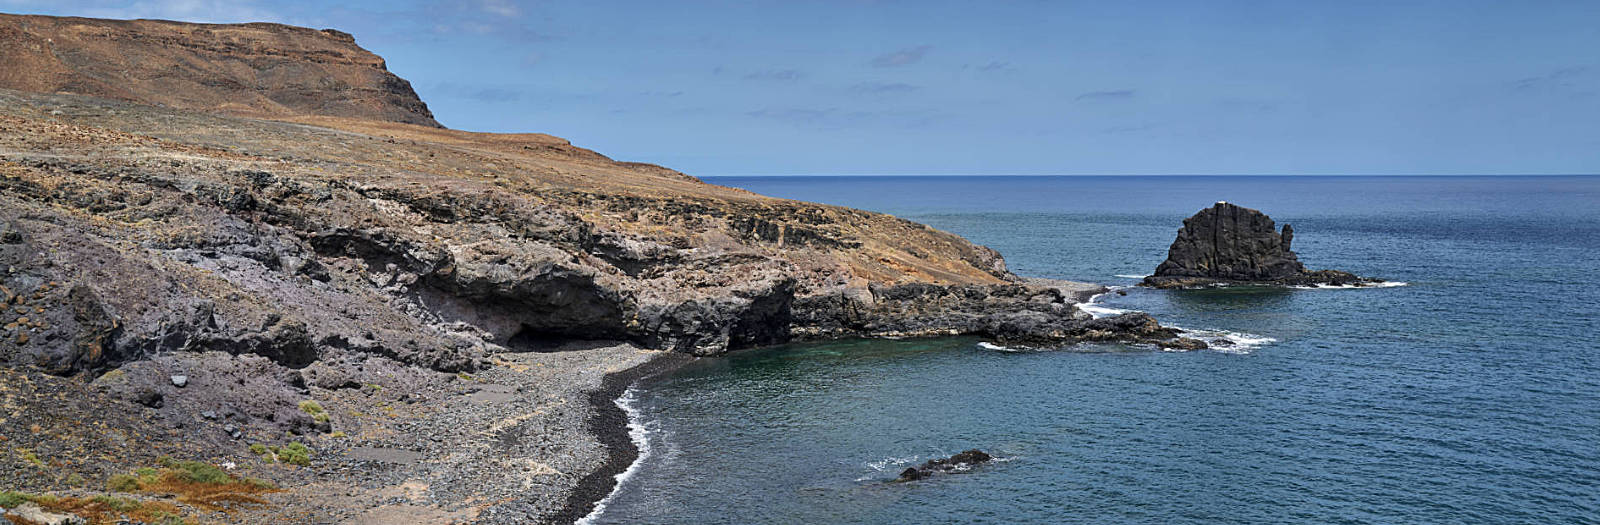 Playa del Roque und Peñón del Roque Punta de la Entallada Fuerteventura.